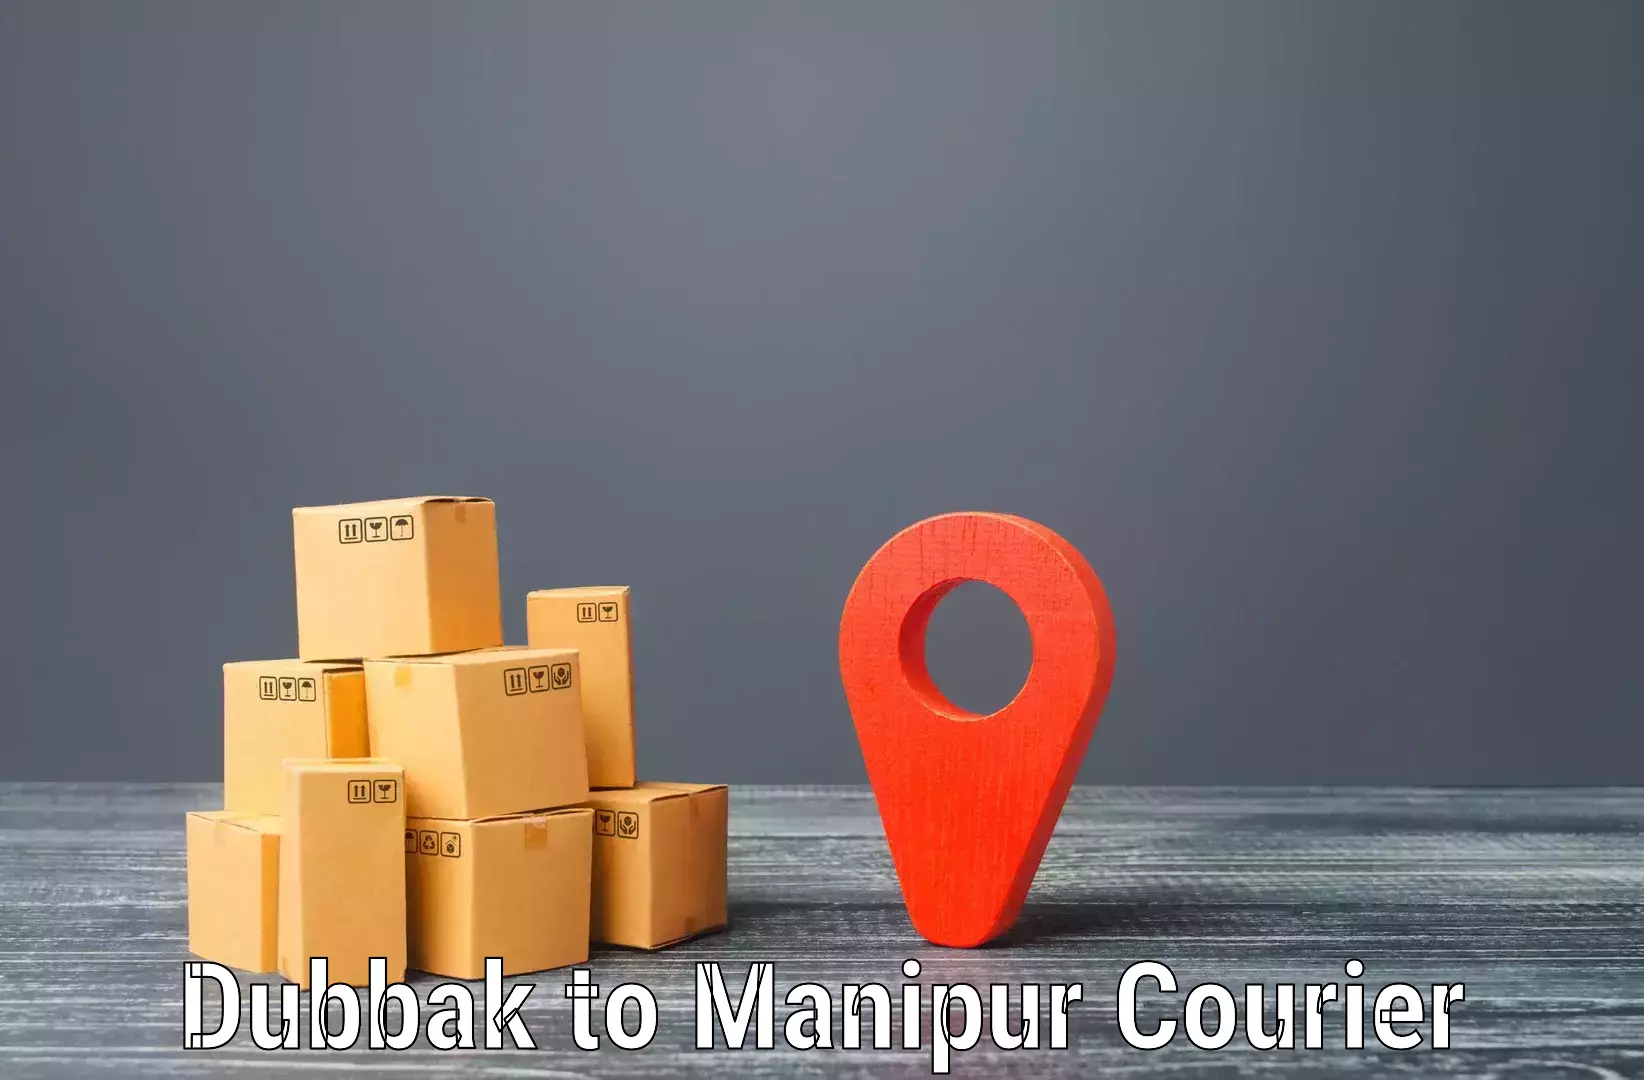 Customer-centric shipping Dubbak to Tadubi